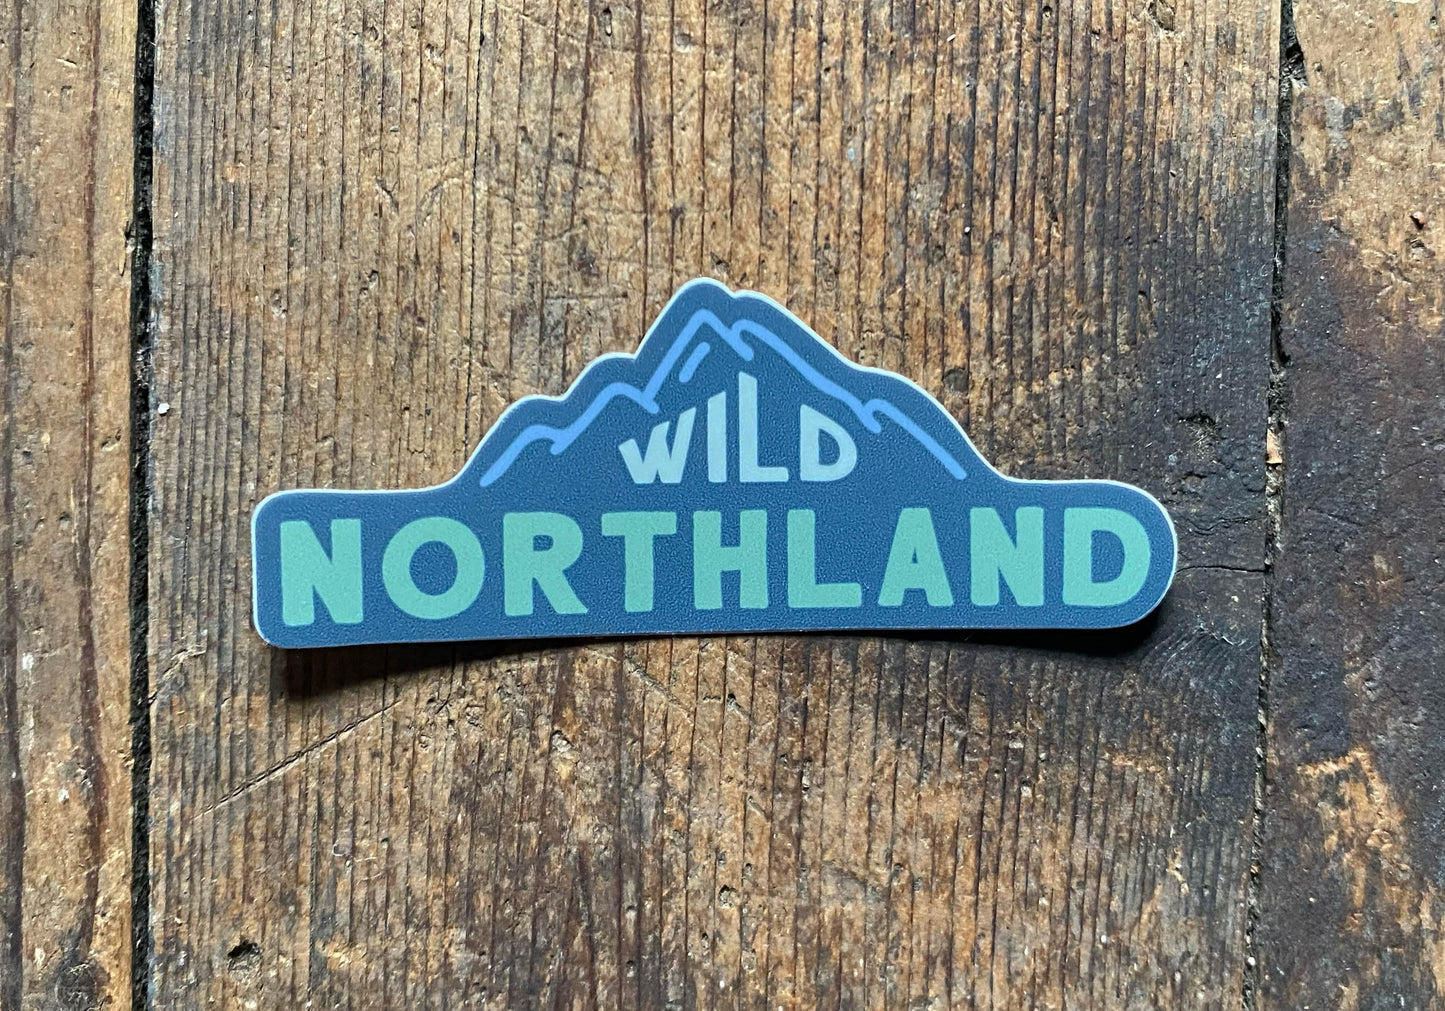 Wild Northland Mountain 3" Sticker